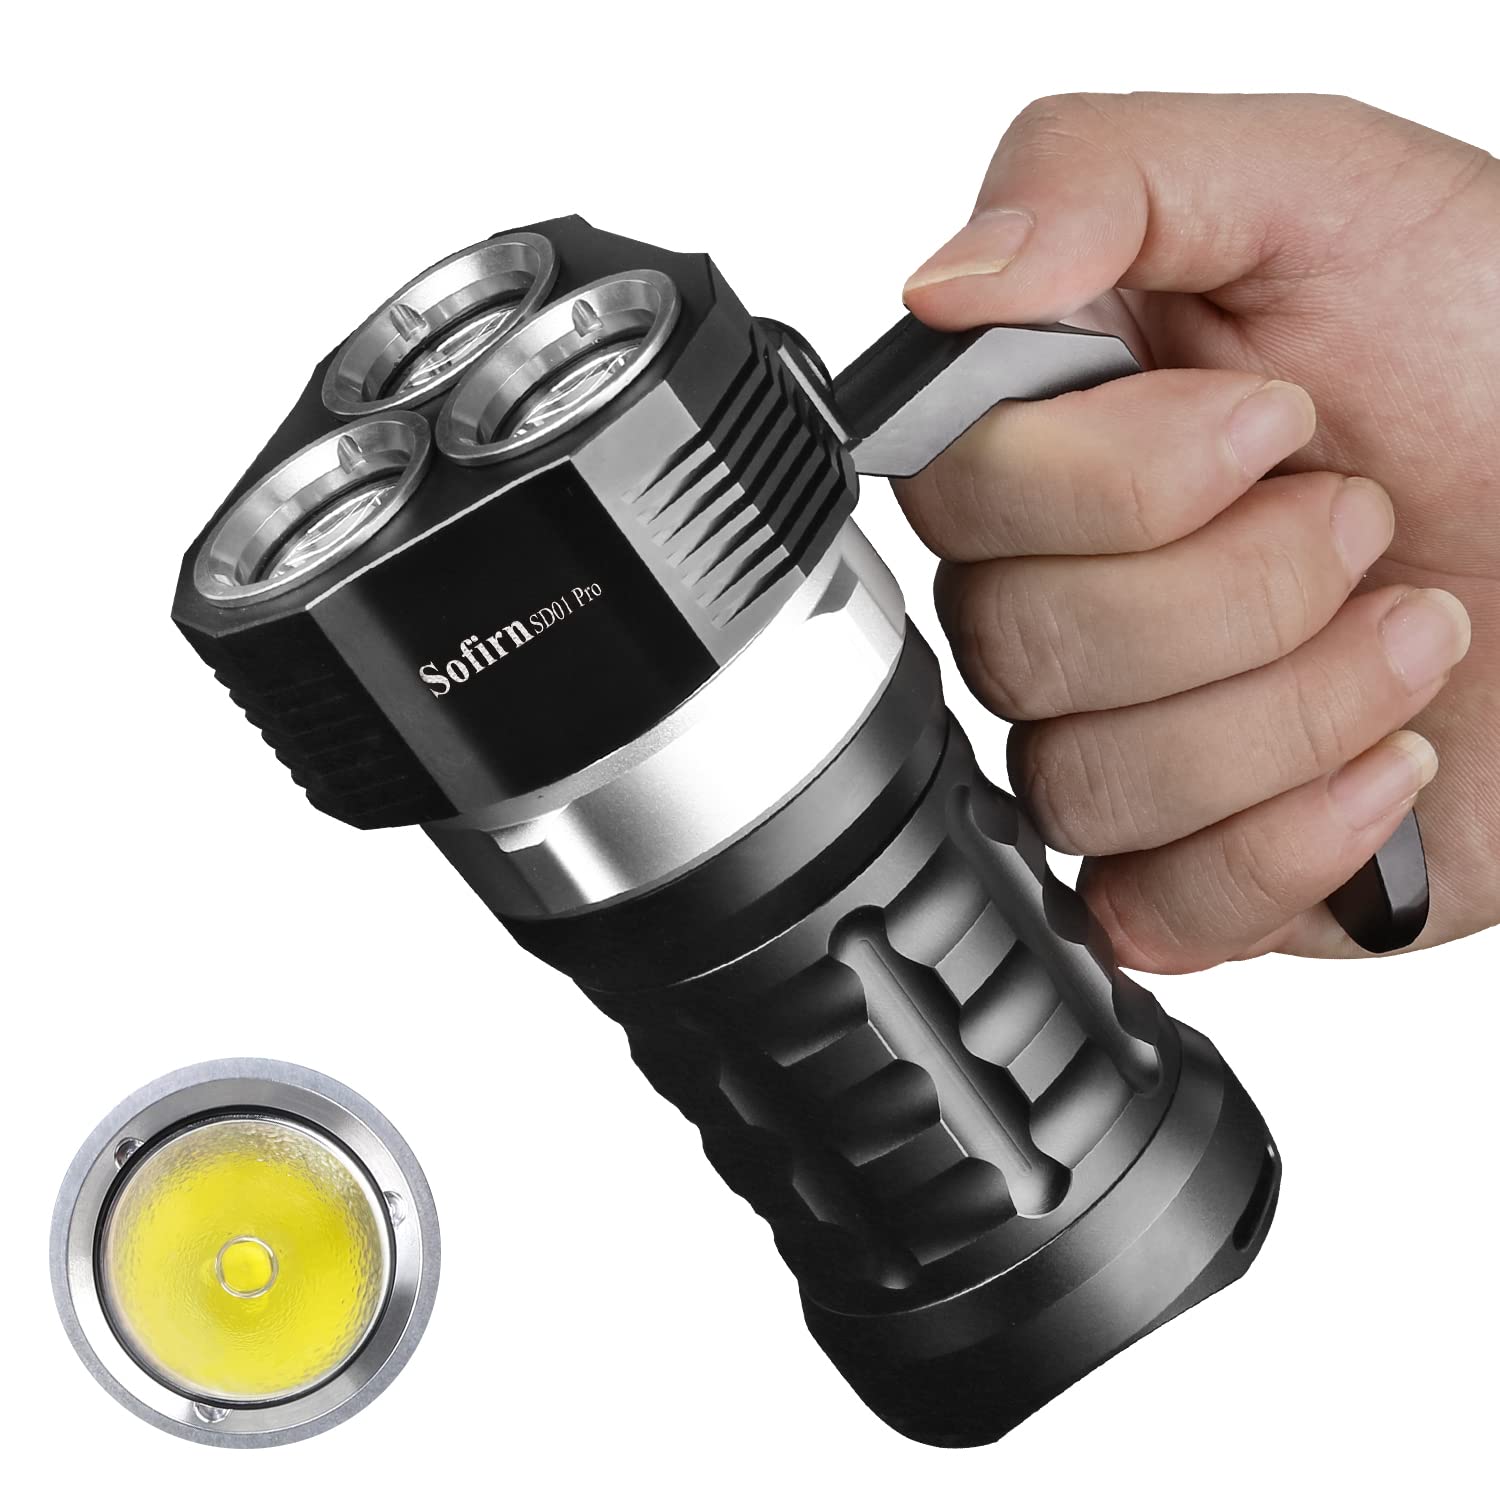 Sofirn Tauchen Taschenlampe 10000 Lumen, SD01 Pro Scuba Led Taschenlampe Tauchlampe mit XHP50.2 LED 4 Helligkeitsmodi Unterwasser 100 Meter wasserdicht mit magnetischem Kontrollschalter